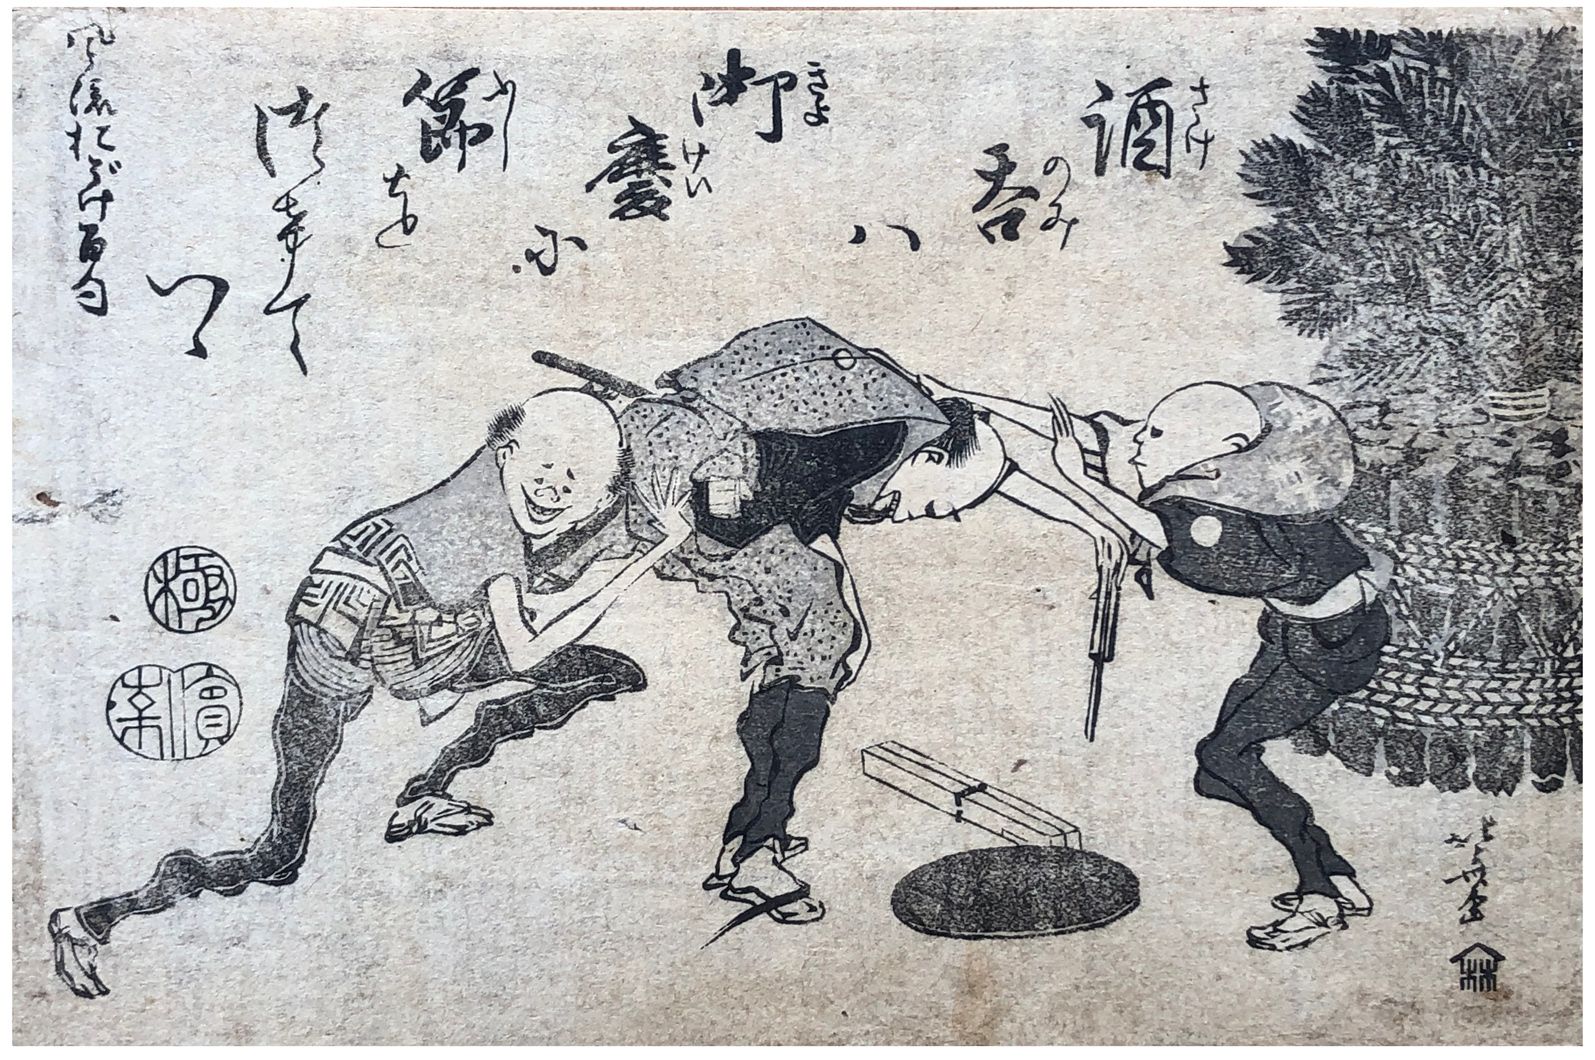 Japanese Woodblock Print by Katsushika Hokusai New Year Celebration 
Salissures &hellip;